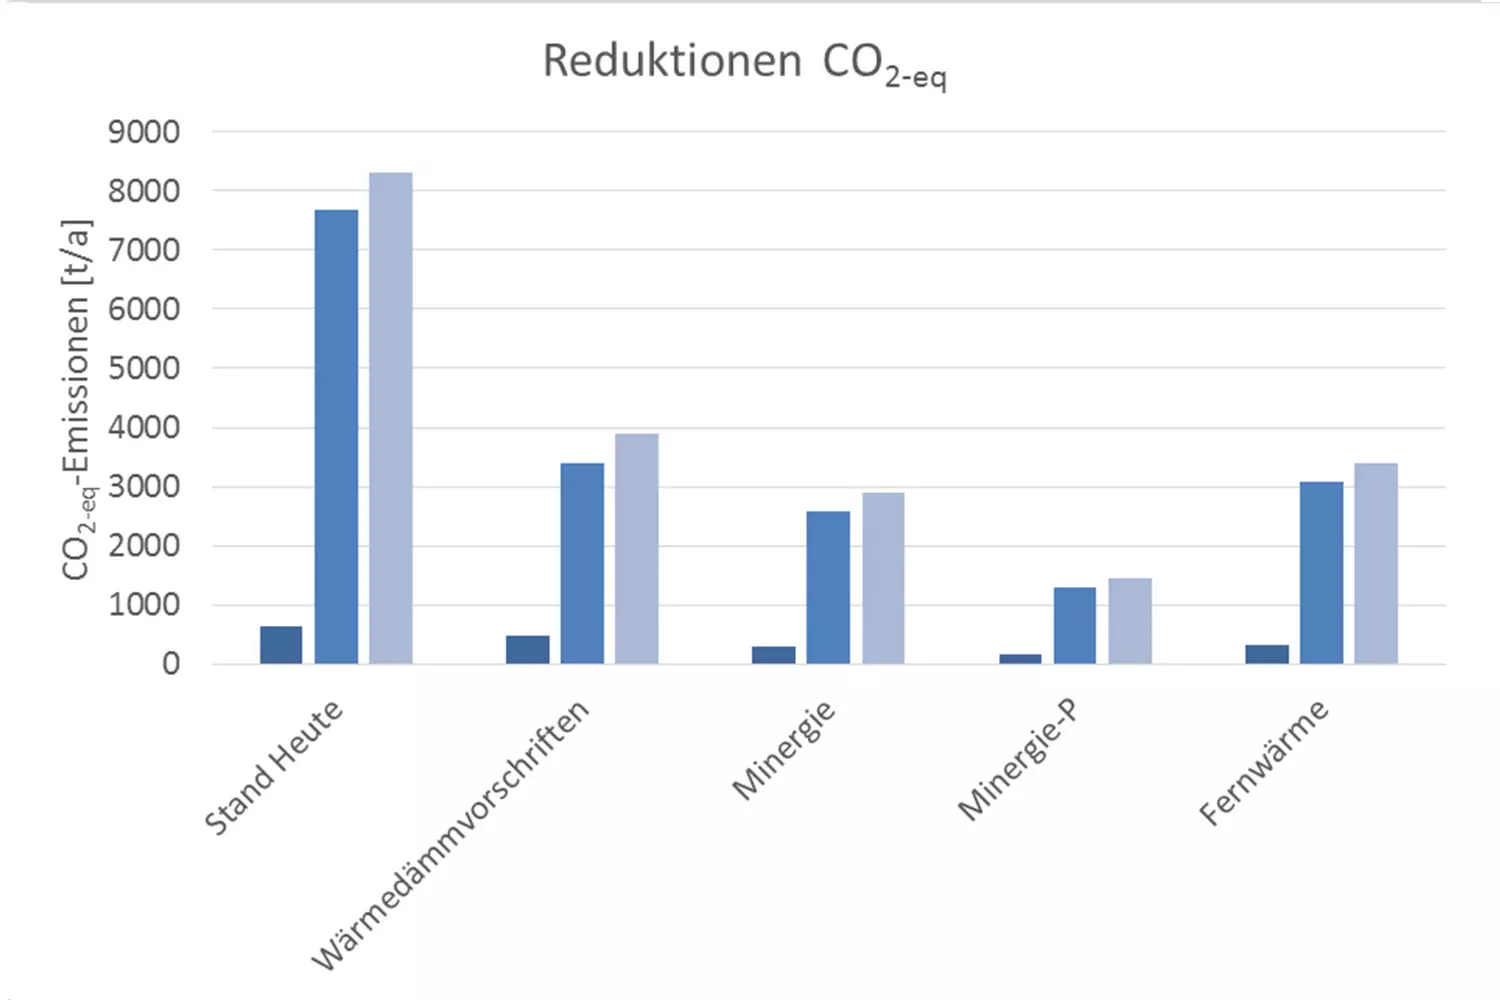 Laut Berechnungen der Absolventen ist das CO2-Reduktionspotenzial im untersuchten Quartier enorm.